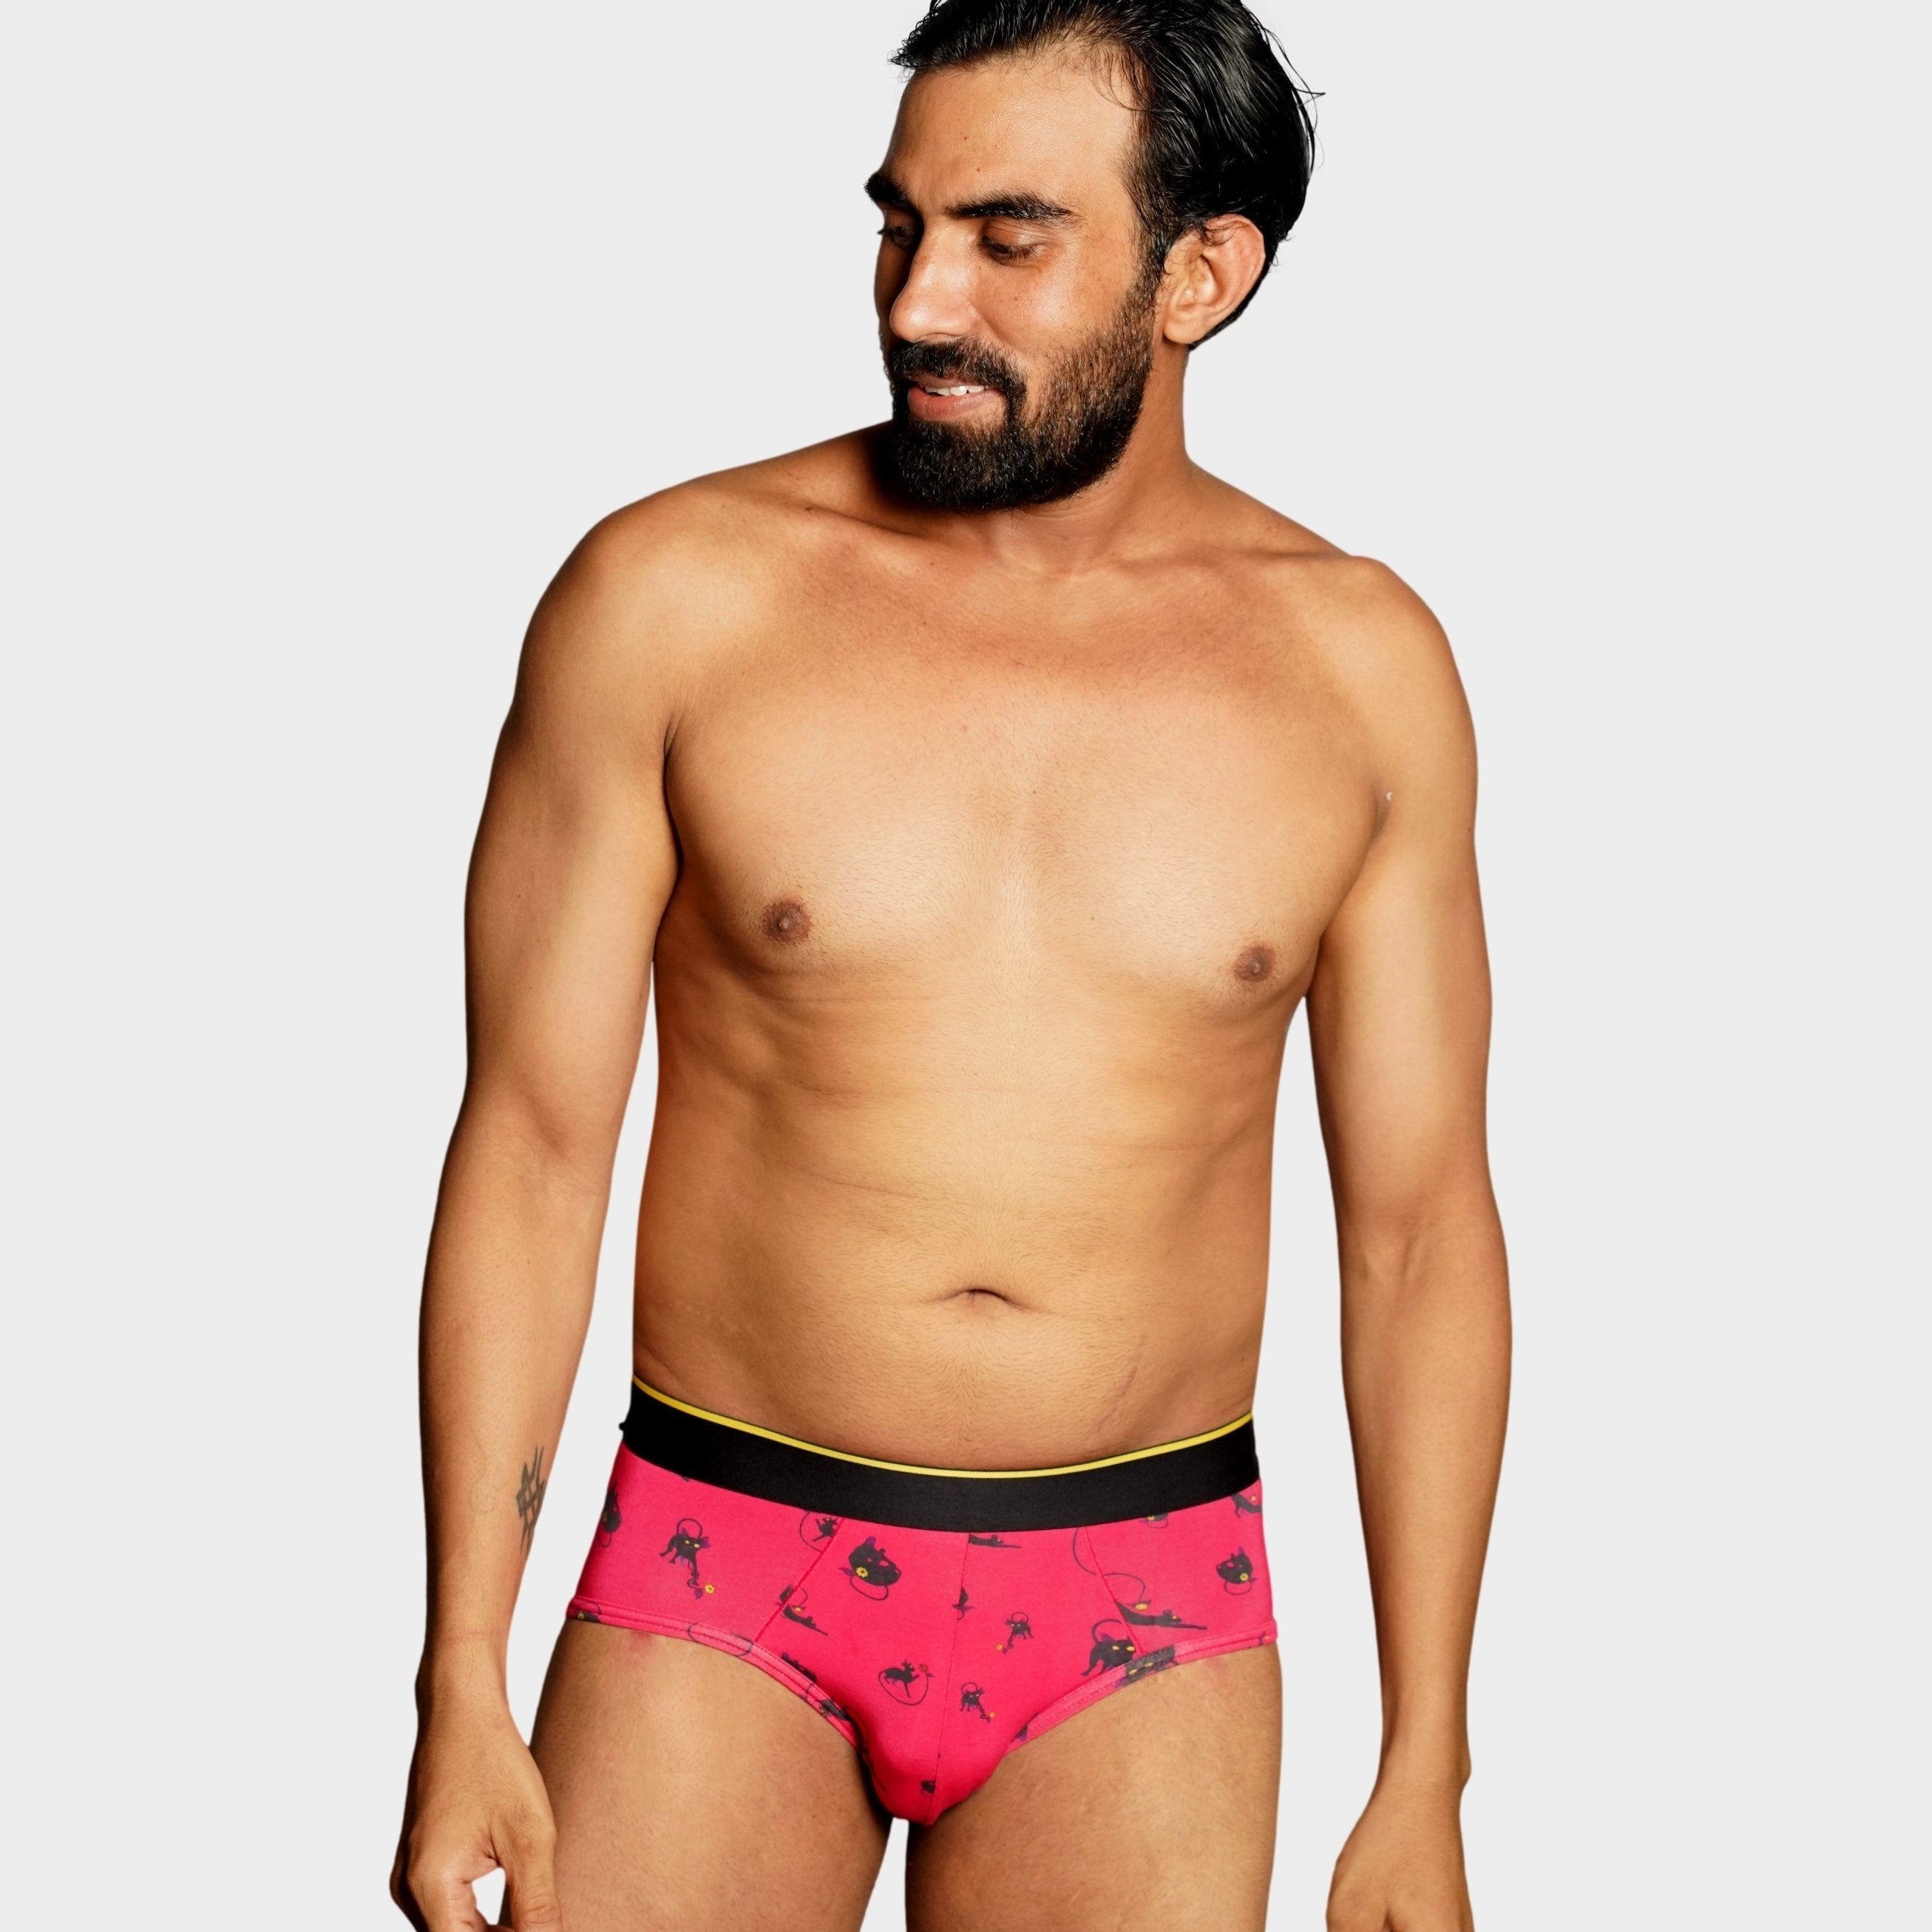 Buy comfortable Briefs Underwear For Men online - Bummer